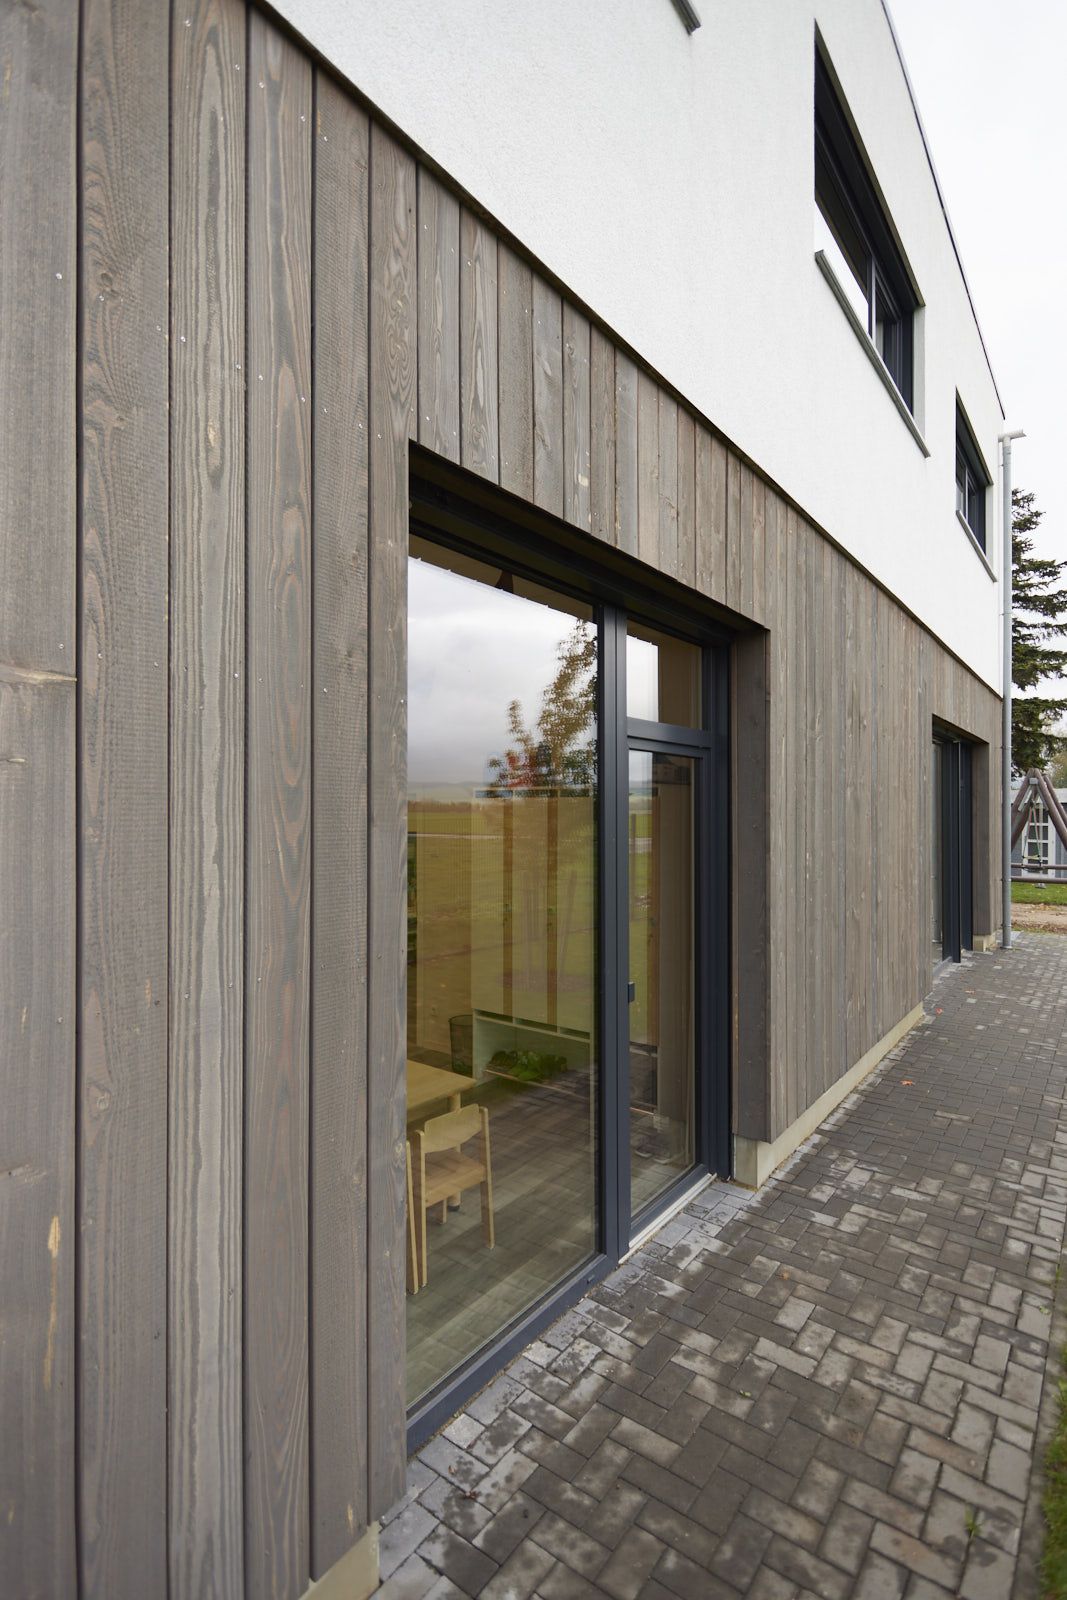 AHF Kindertagesstätte in Bad Lippspringe. Gebäude der KiTa mit Holz- und Putz-Fassade. Detailaufnahme. EPU Architekten